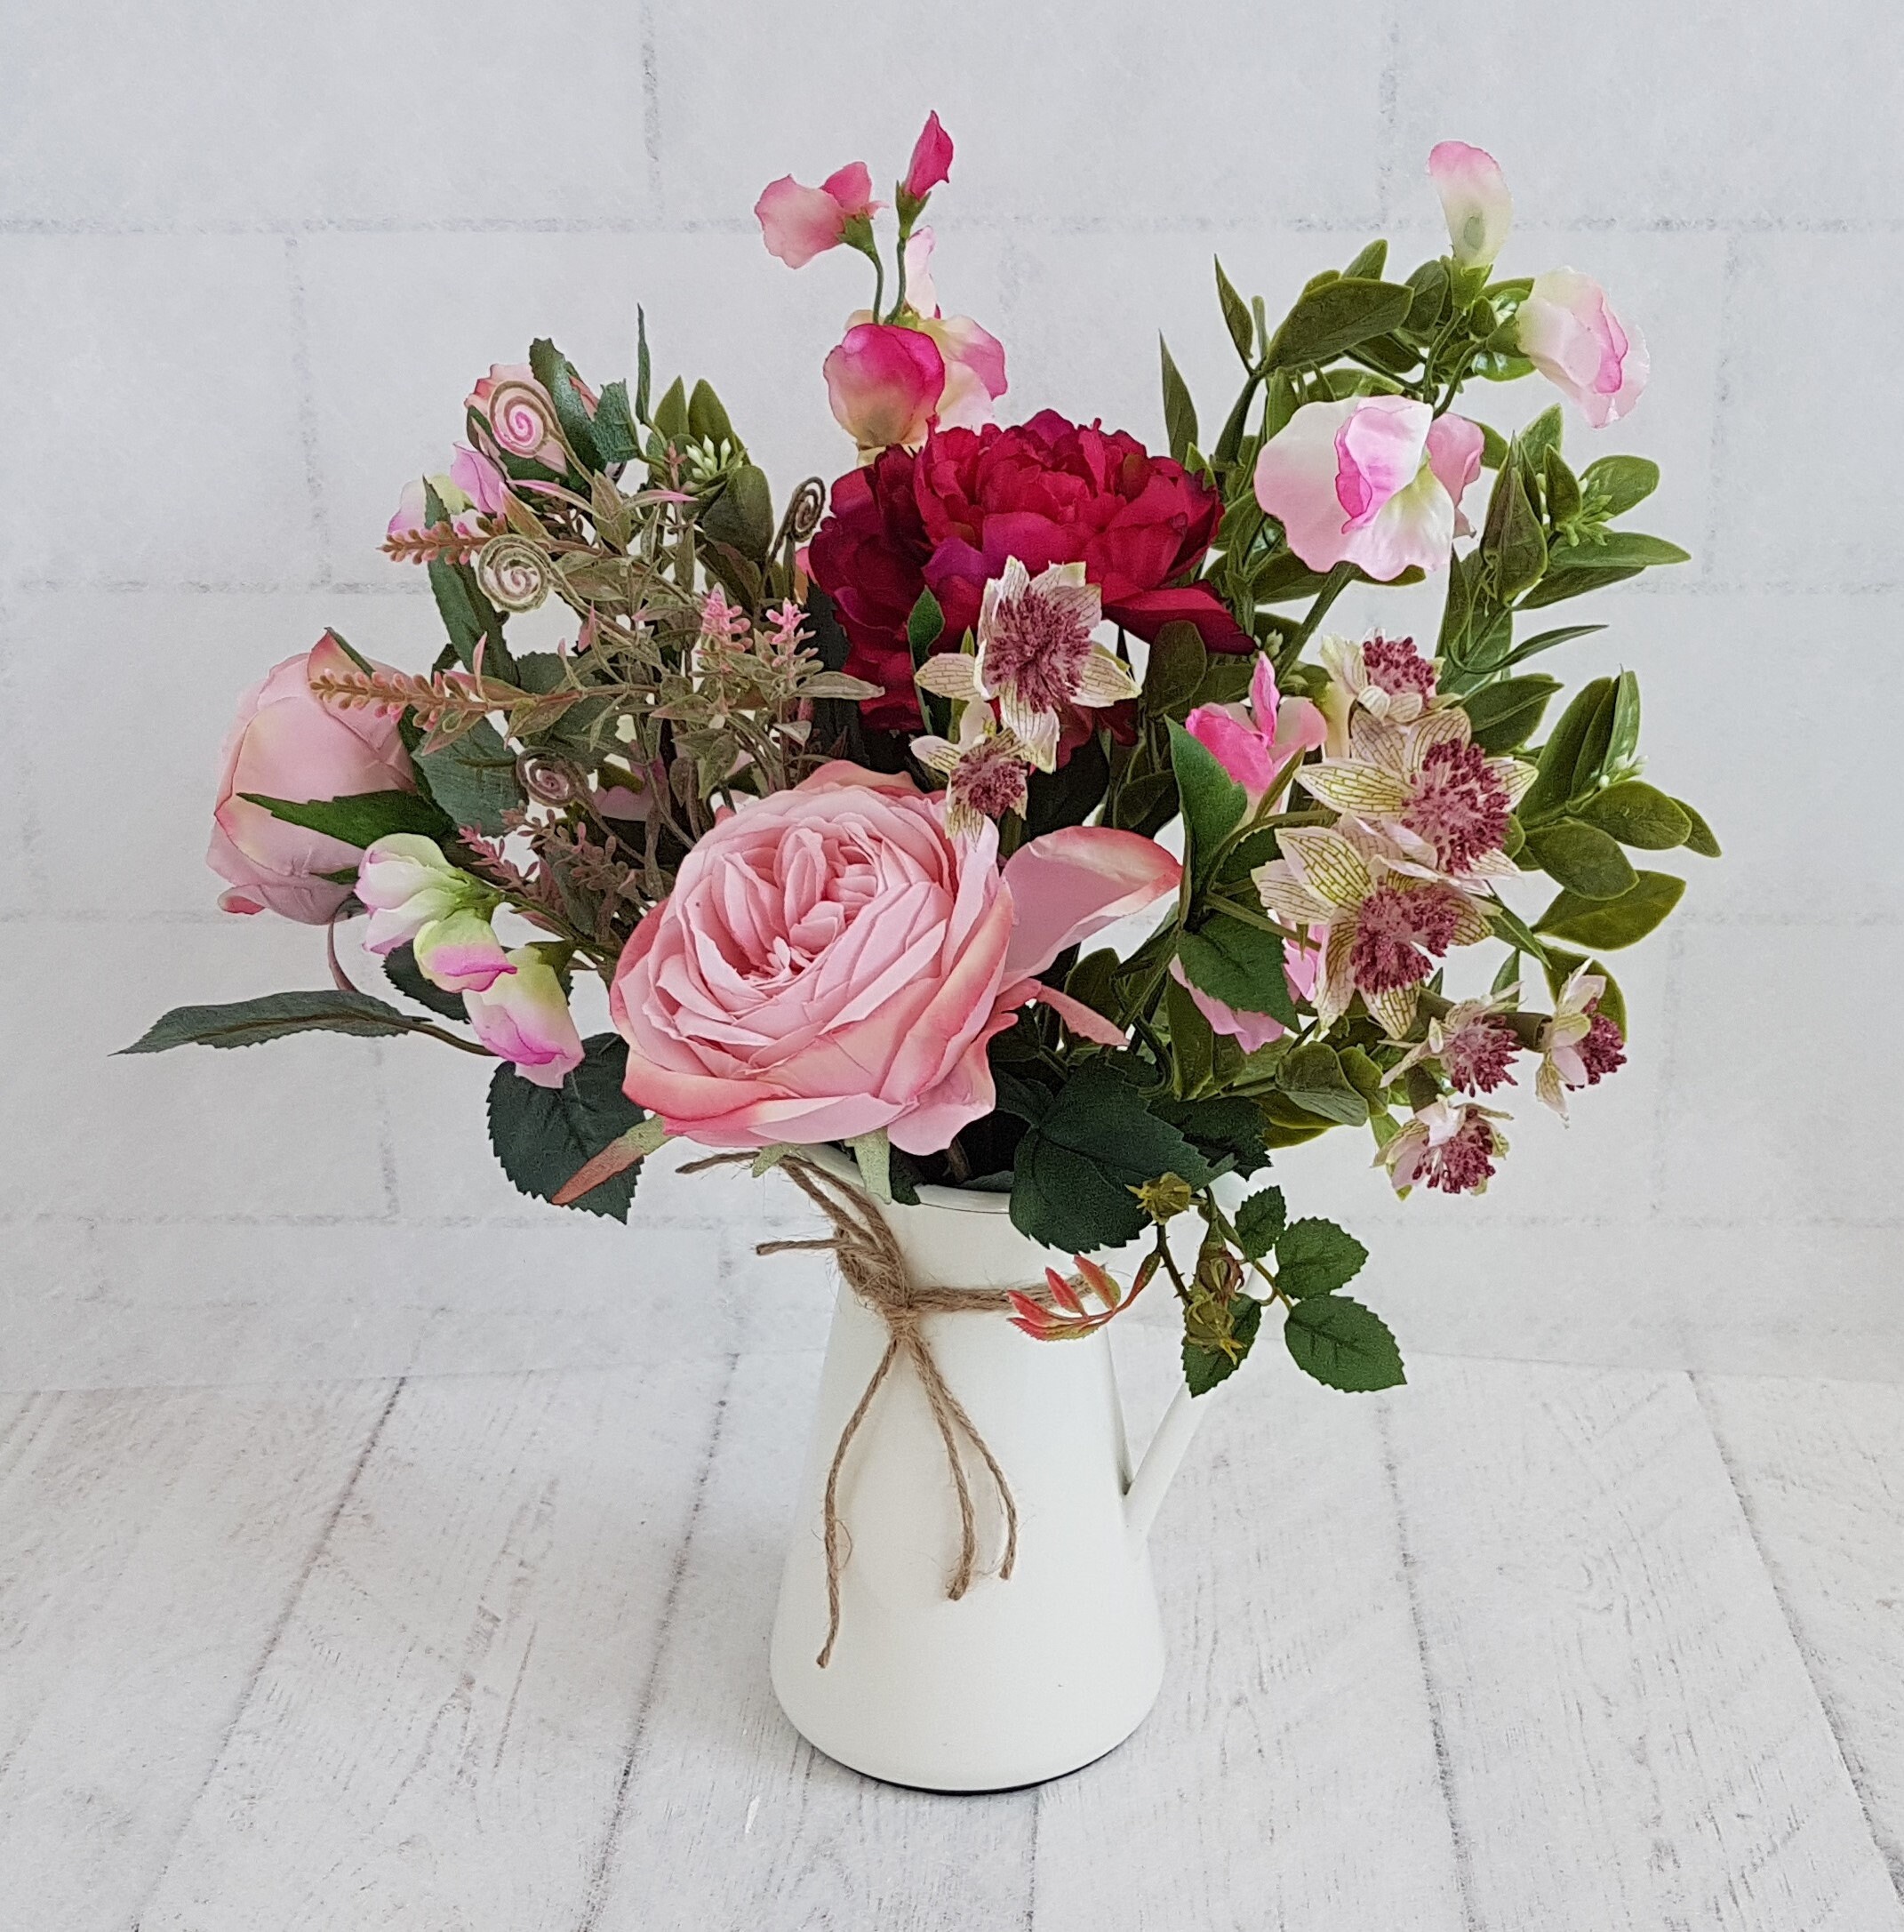 Burgundy & Pink Bouquet Flowers in Jug Vase Floral Arrangement - Etsy UK